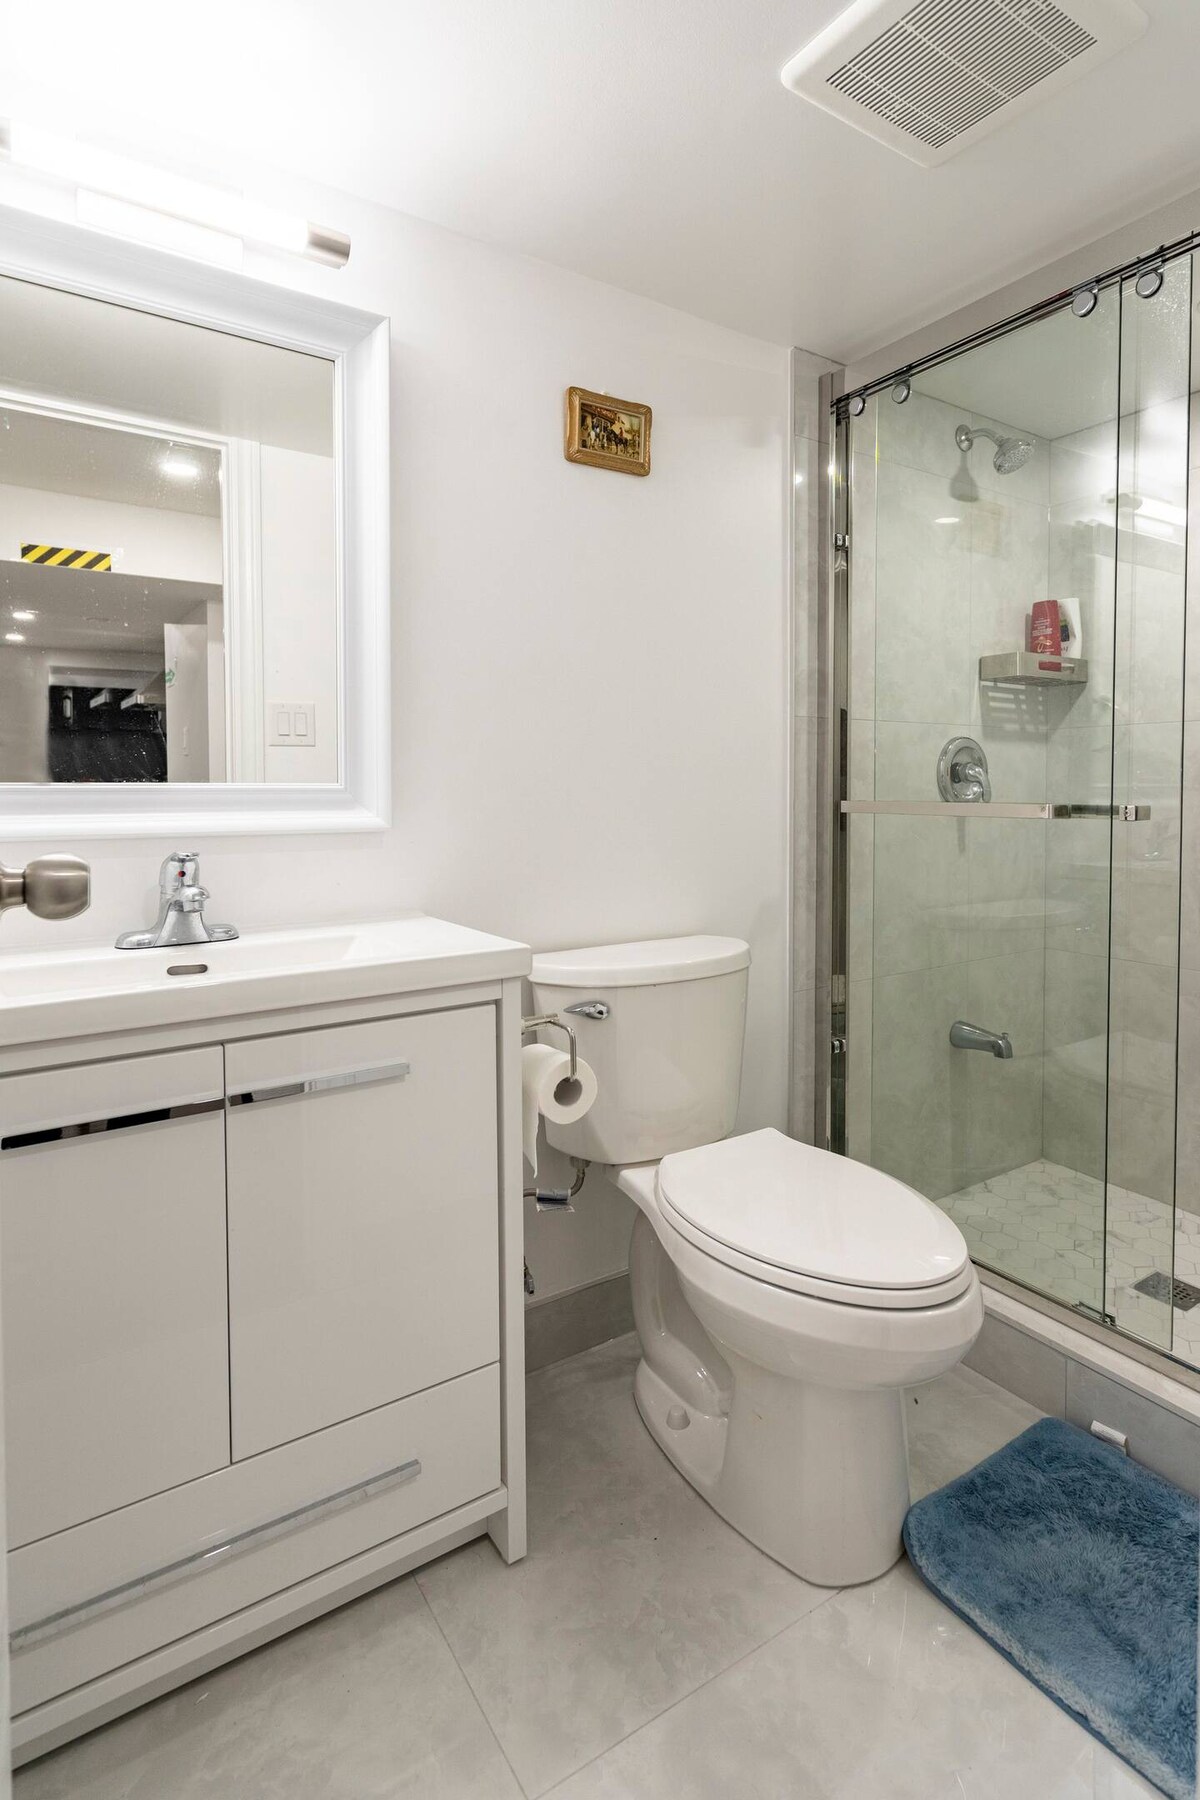 简单整洁的私人房间共用浴室